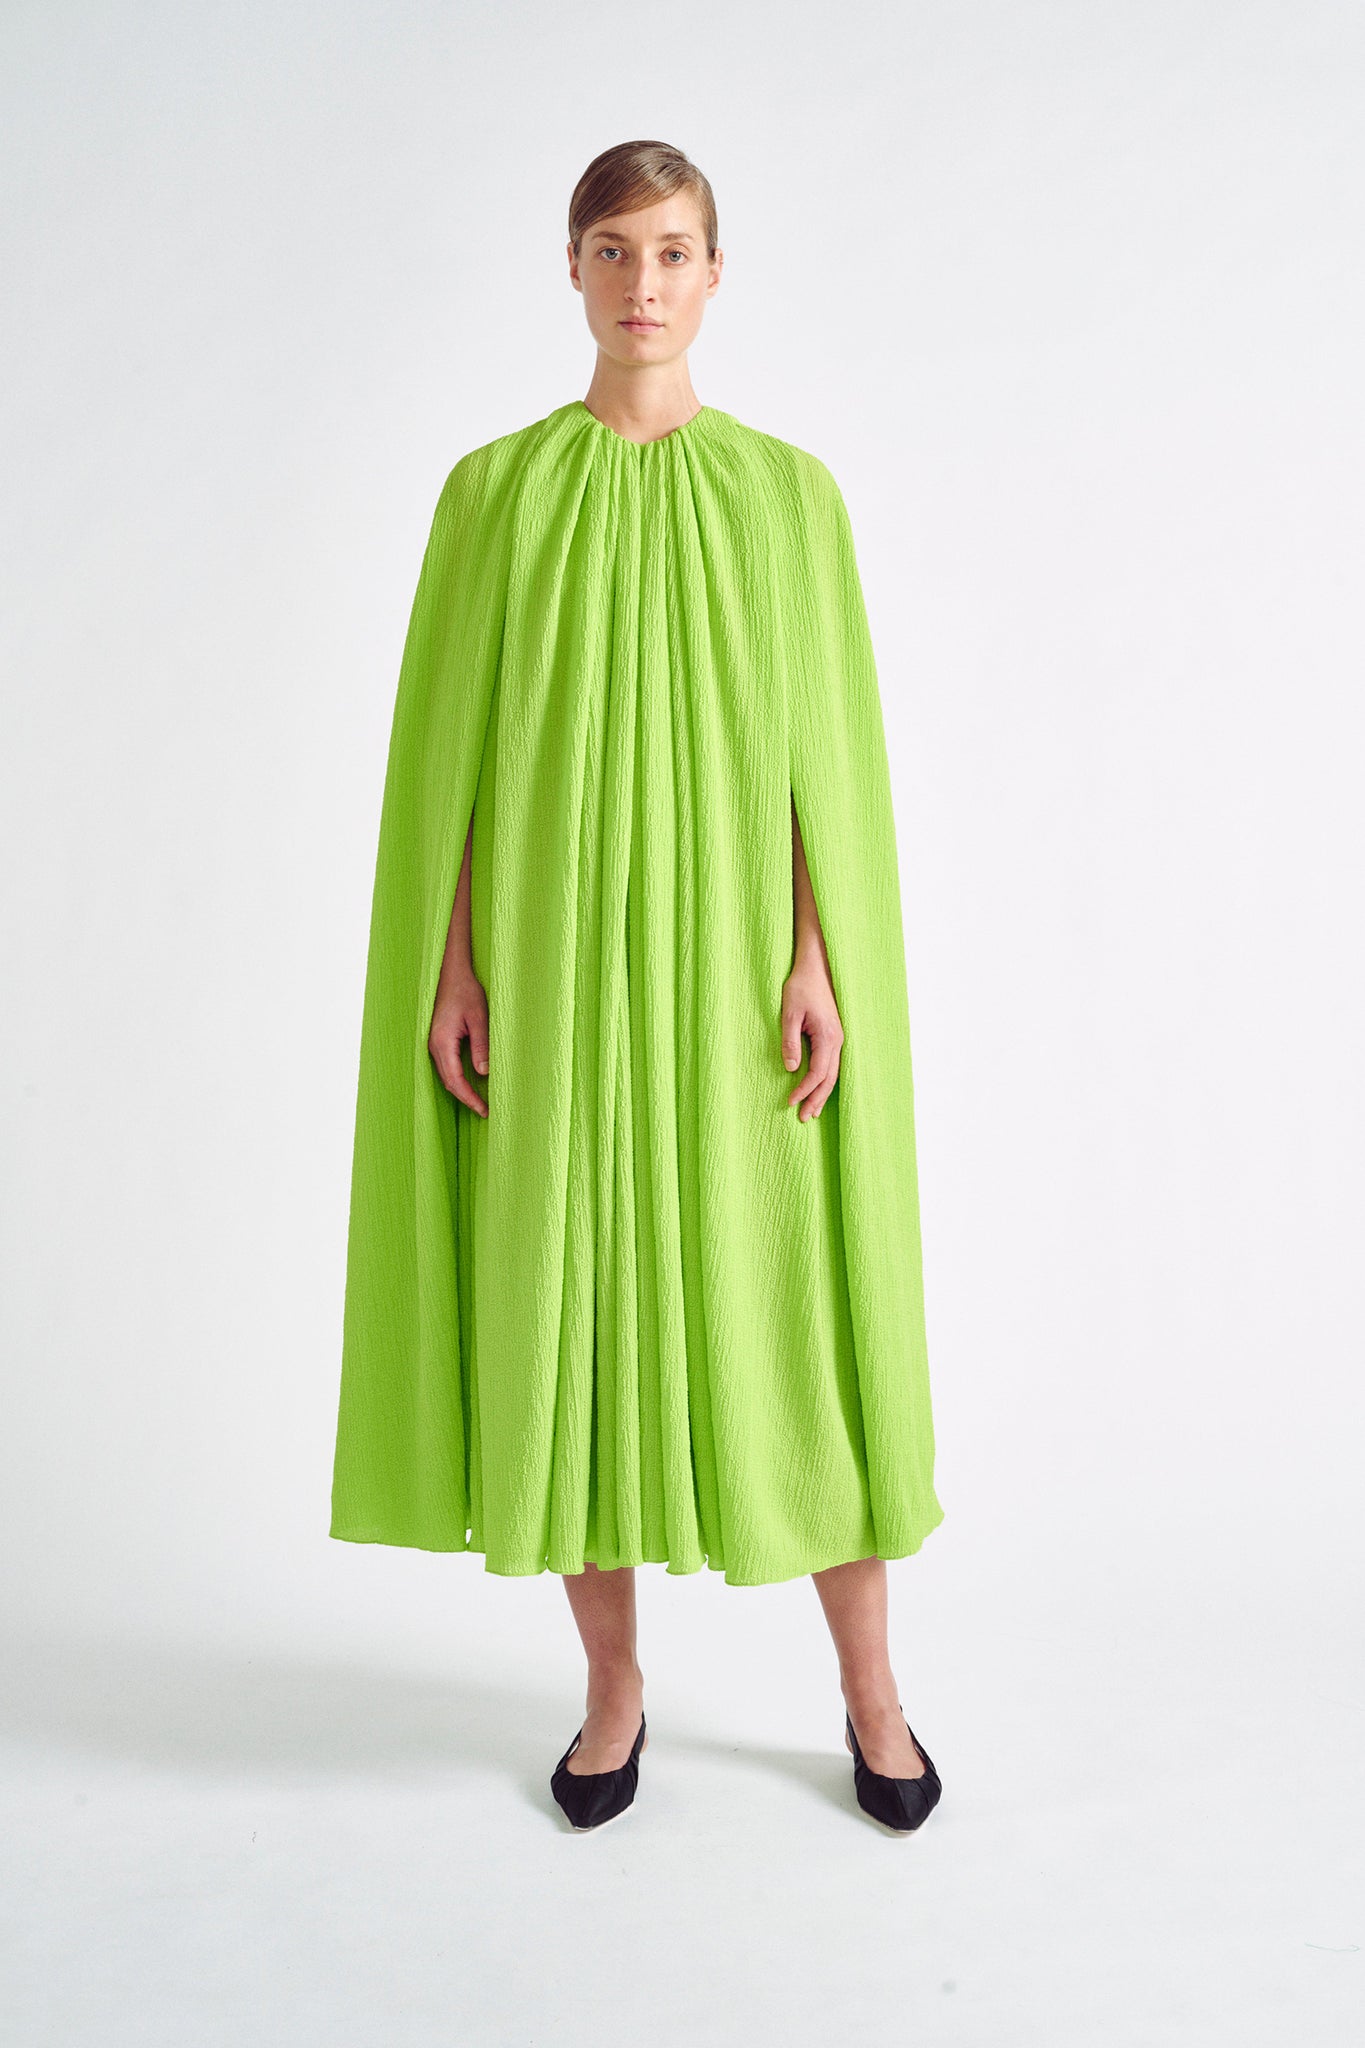 Olivette Dress | Lime Green Cape Dress in Crepe Seersucker | Emilia Wickstead